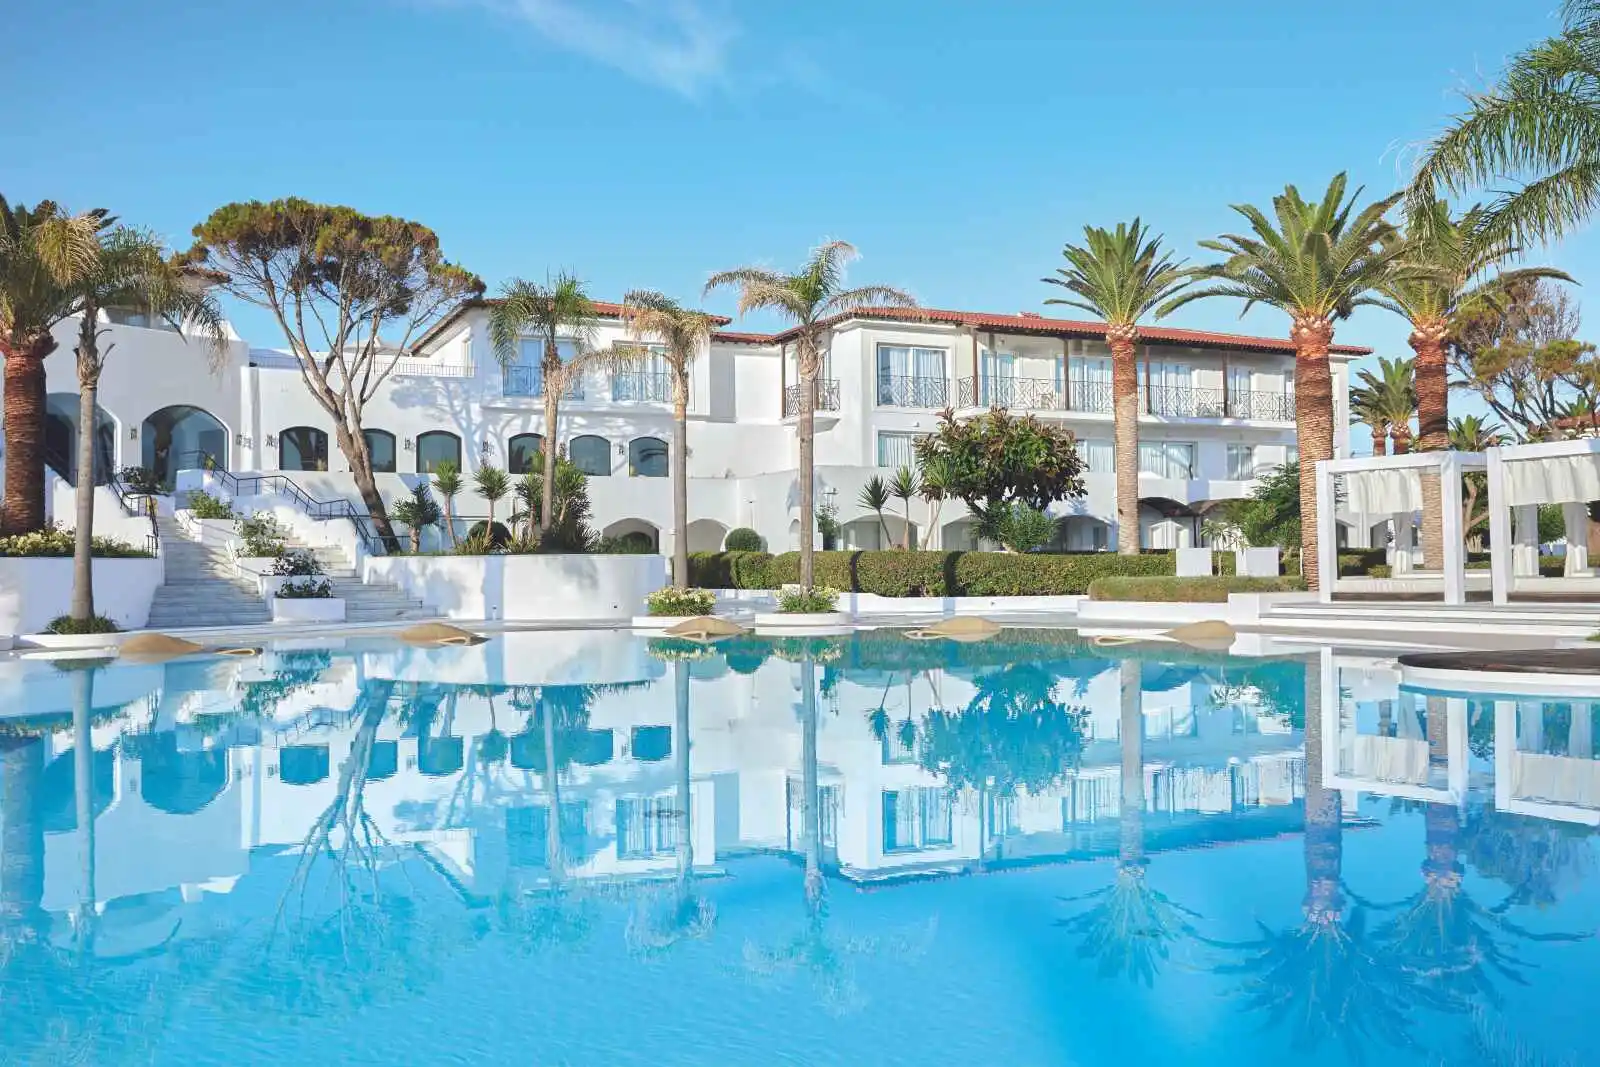 Crète - Rethymnon - Grèce - Iles grecques - Hôtel Grecotel Caramel Boutique Resort 5*